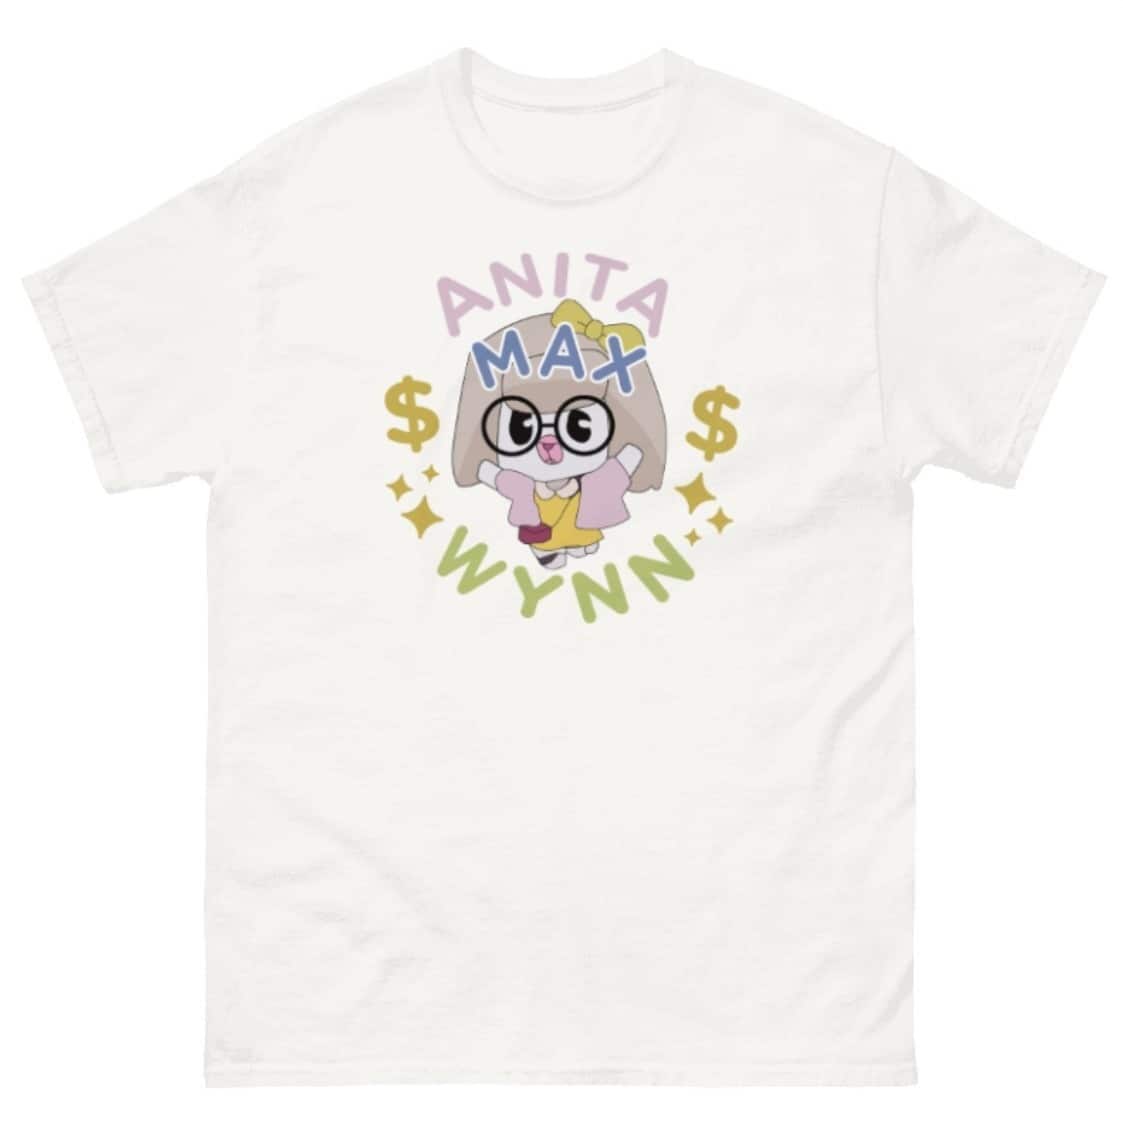 Cool Anita Max Wynn T-Shirt